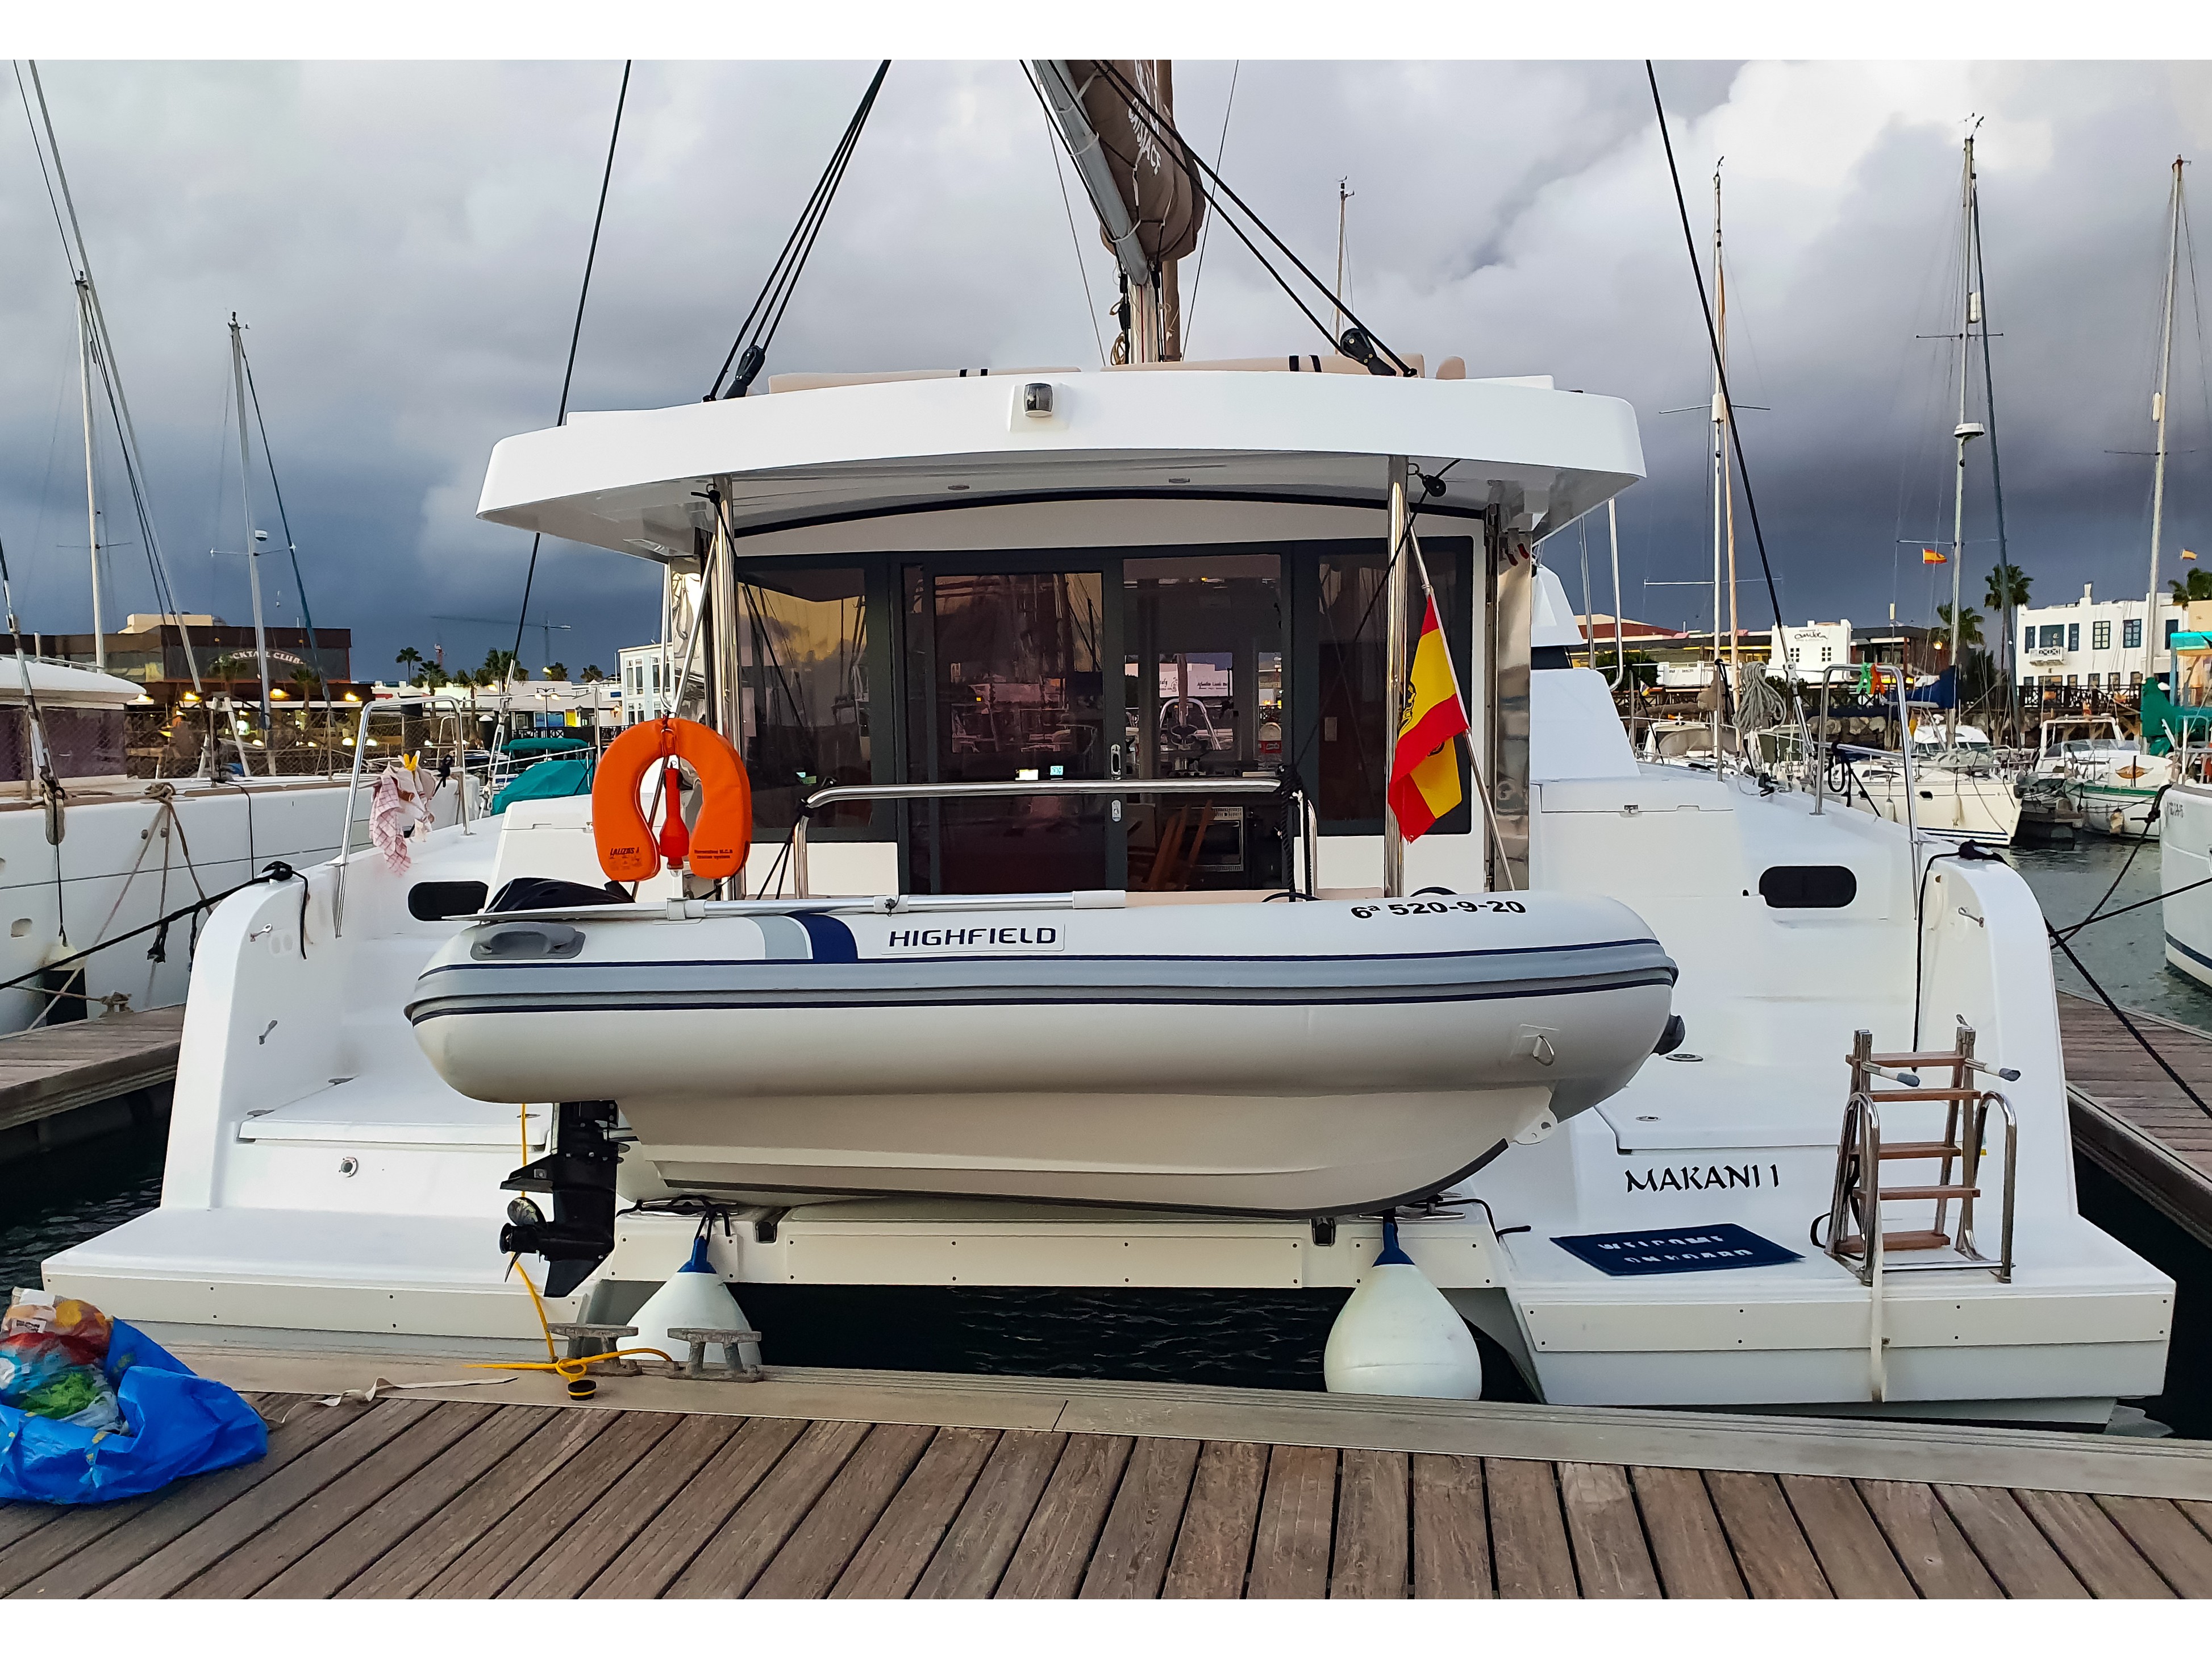 Bali Catspace - Yacht Charter Tenerife & Boat hire in Spain Canary Islands Tenerife Las Galletas Marina del Sur 1